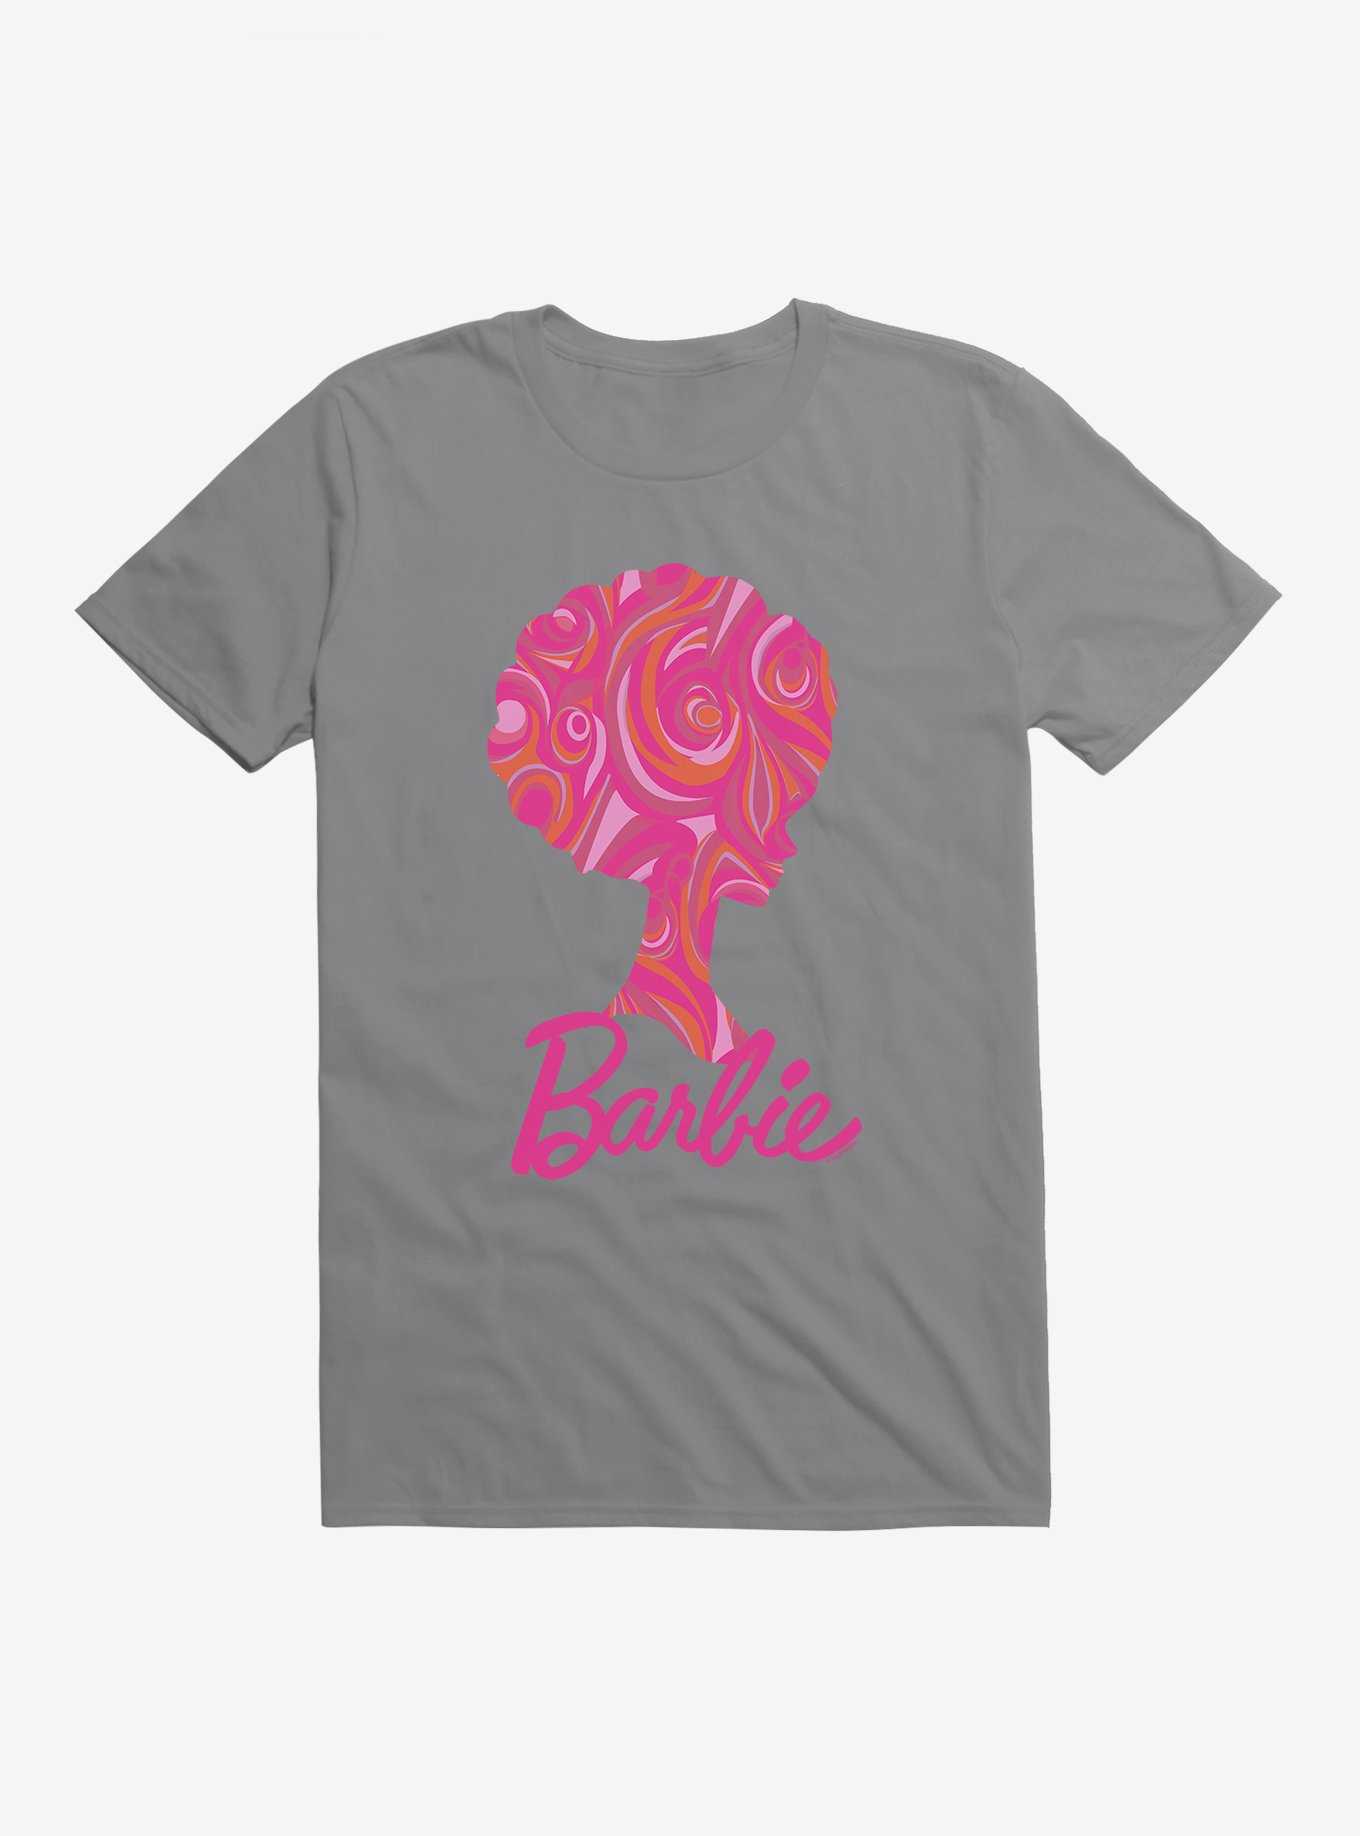 Barbie Pink Dream T-Shirt, , hi-res